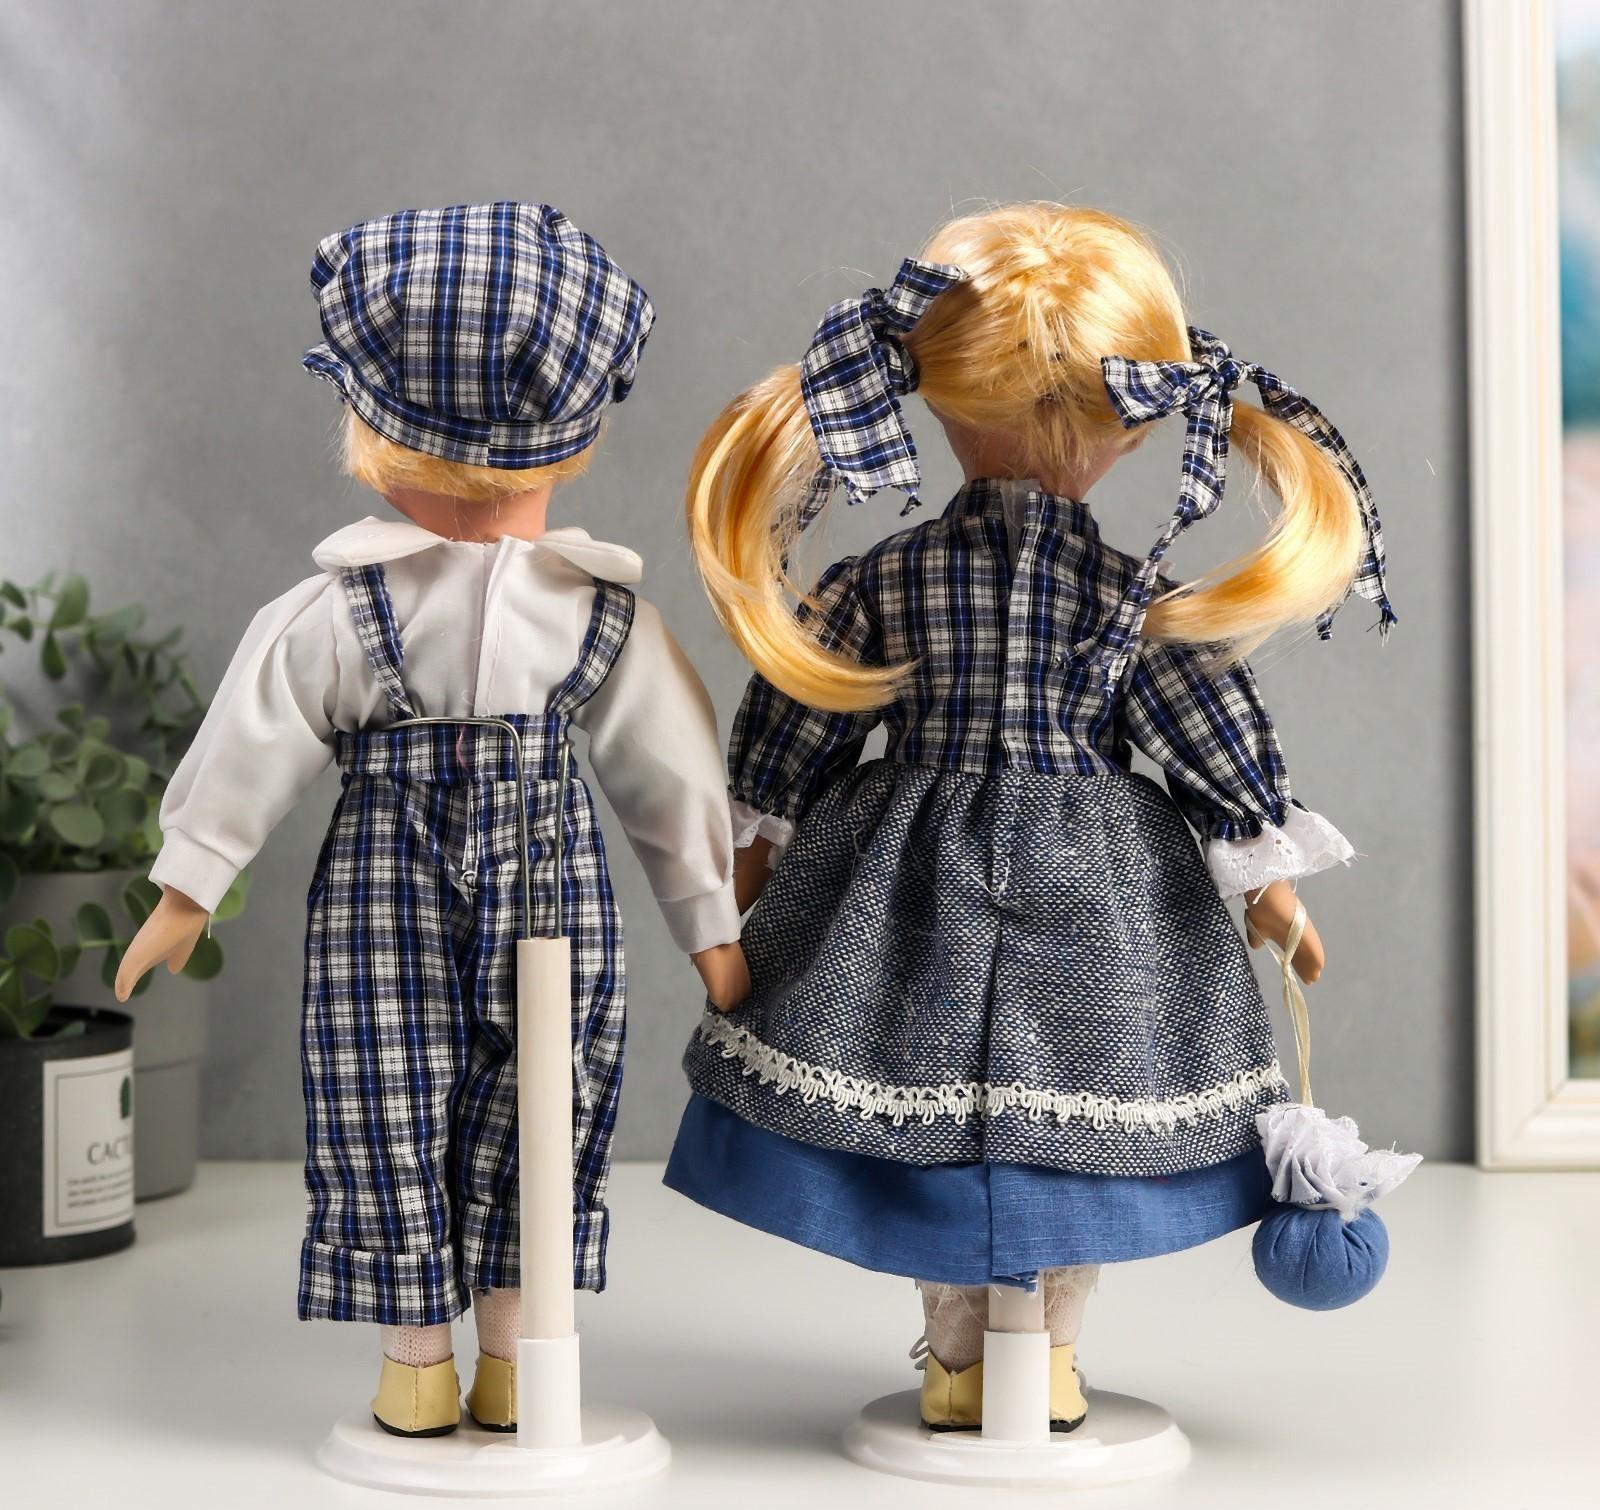 Кукла коллекционная парочка набор 2 шт 